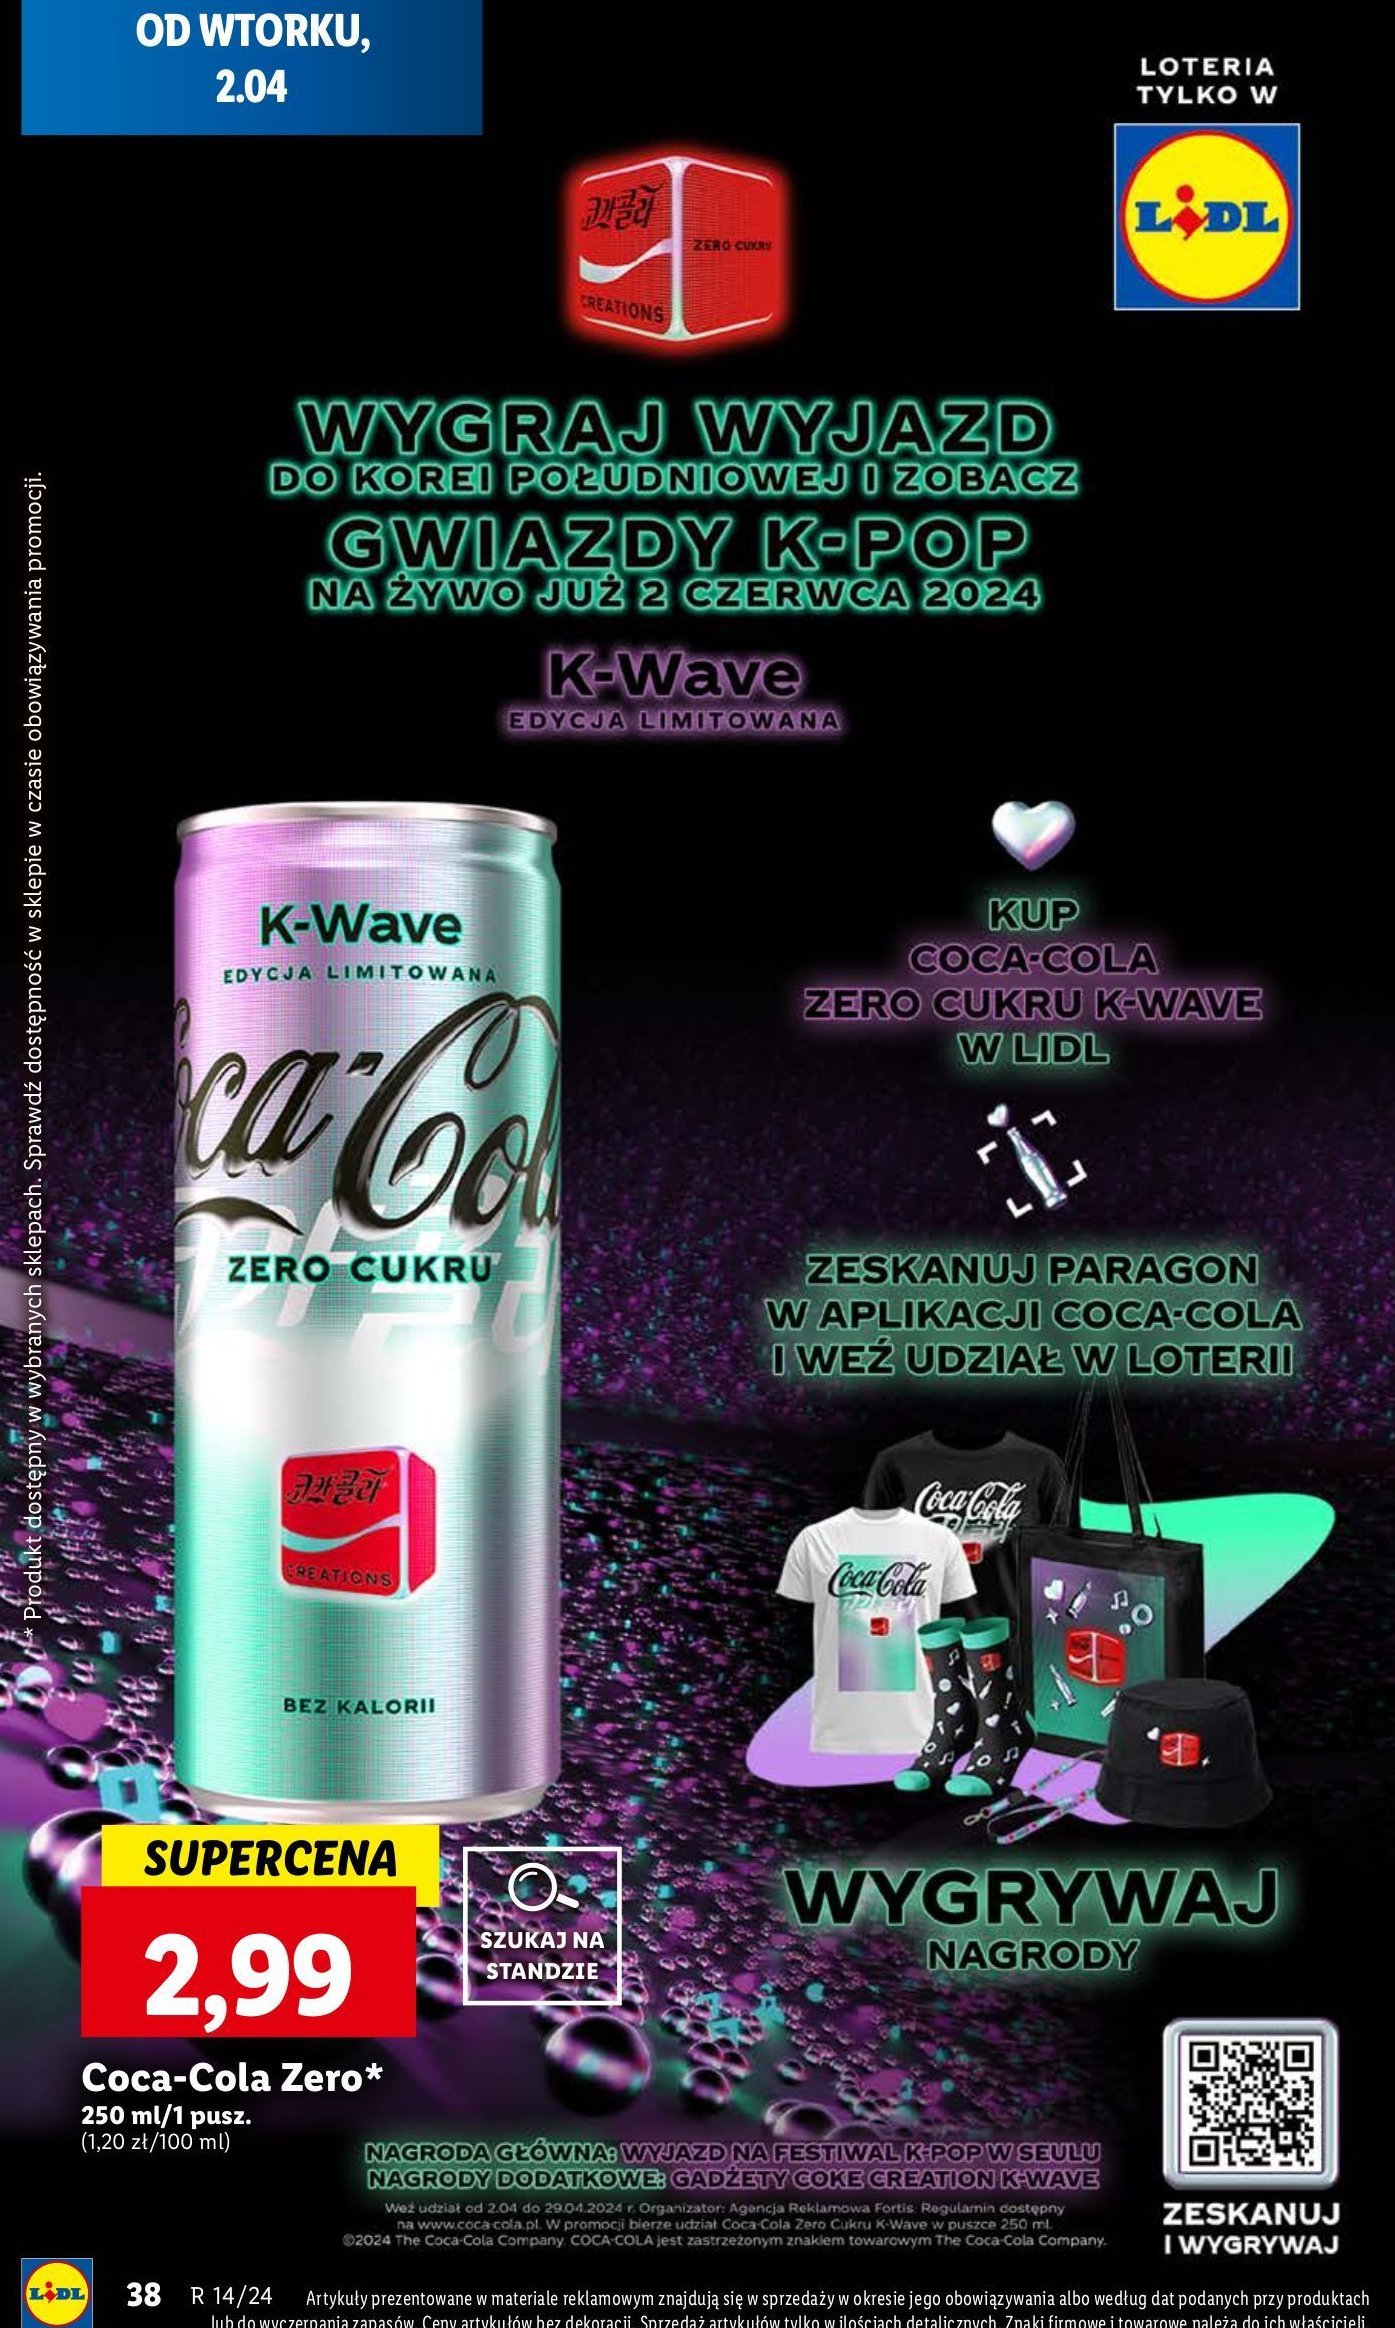 Napój Coca-cola k-wave promocja